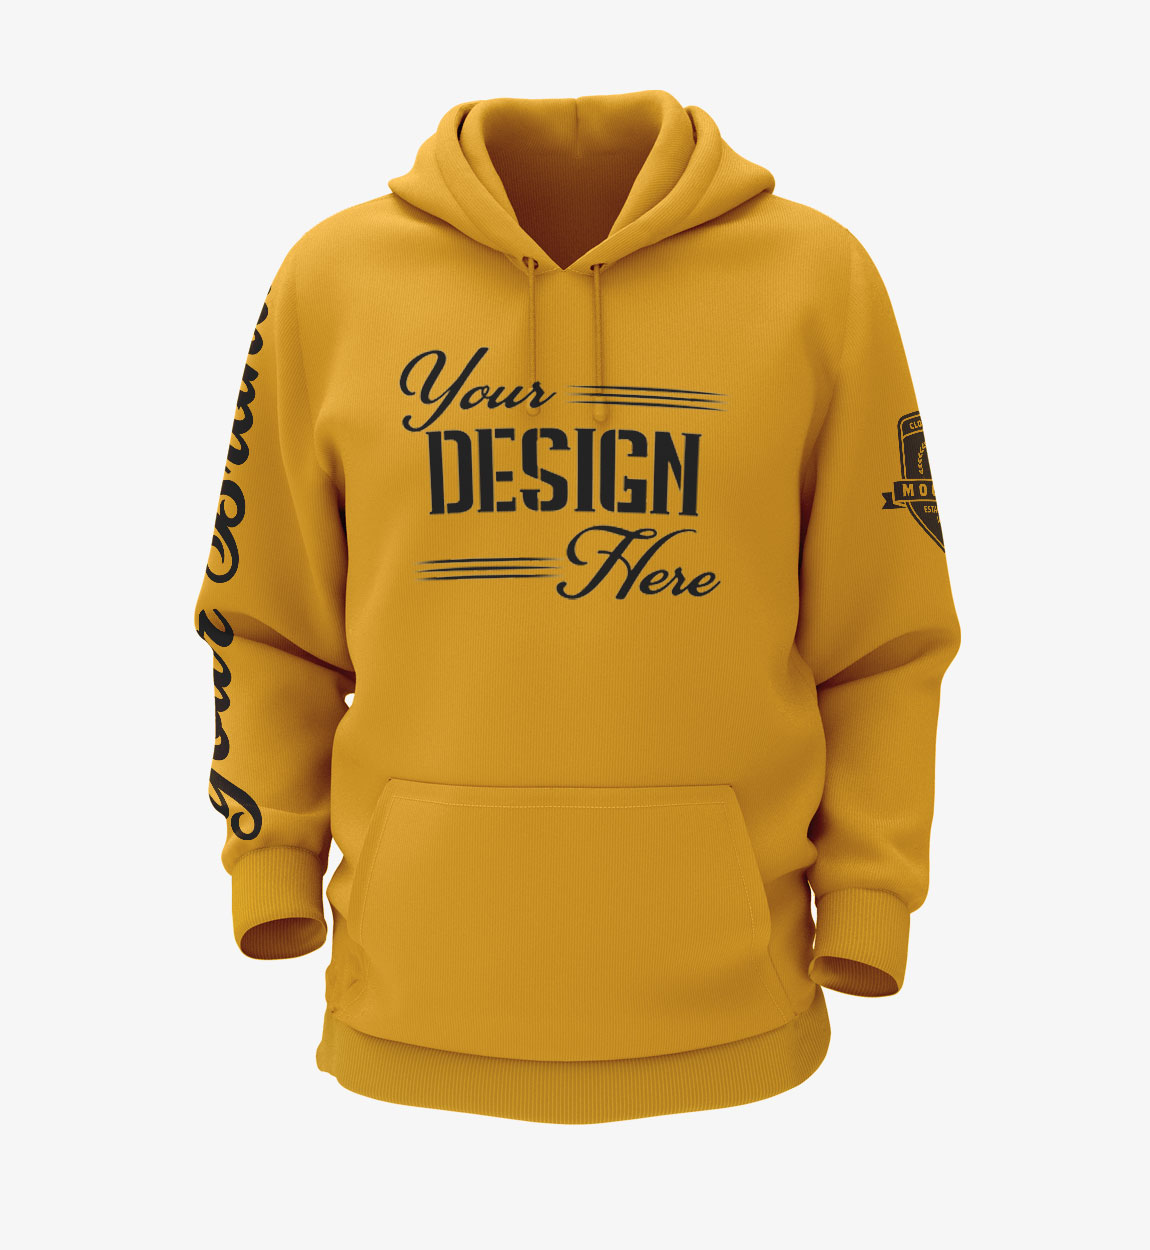 bespole_custom_print_hoodie